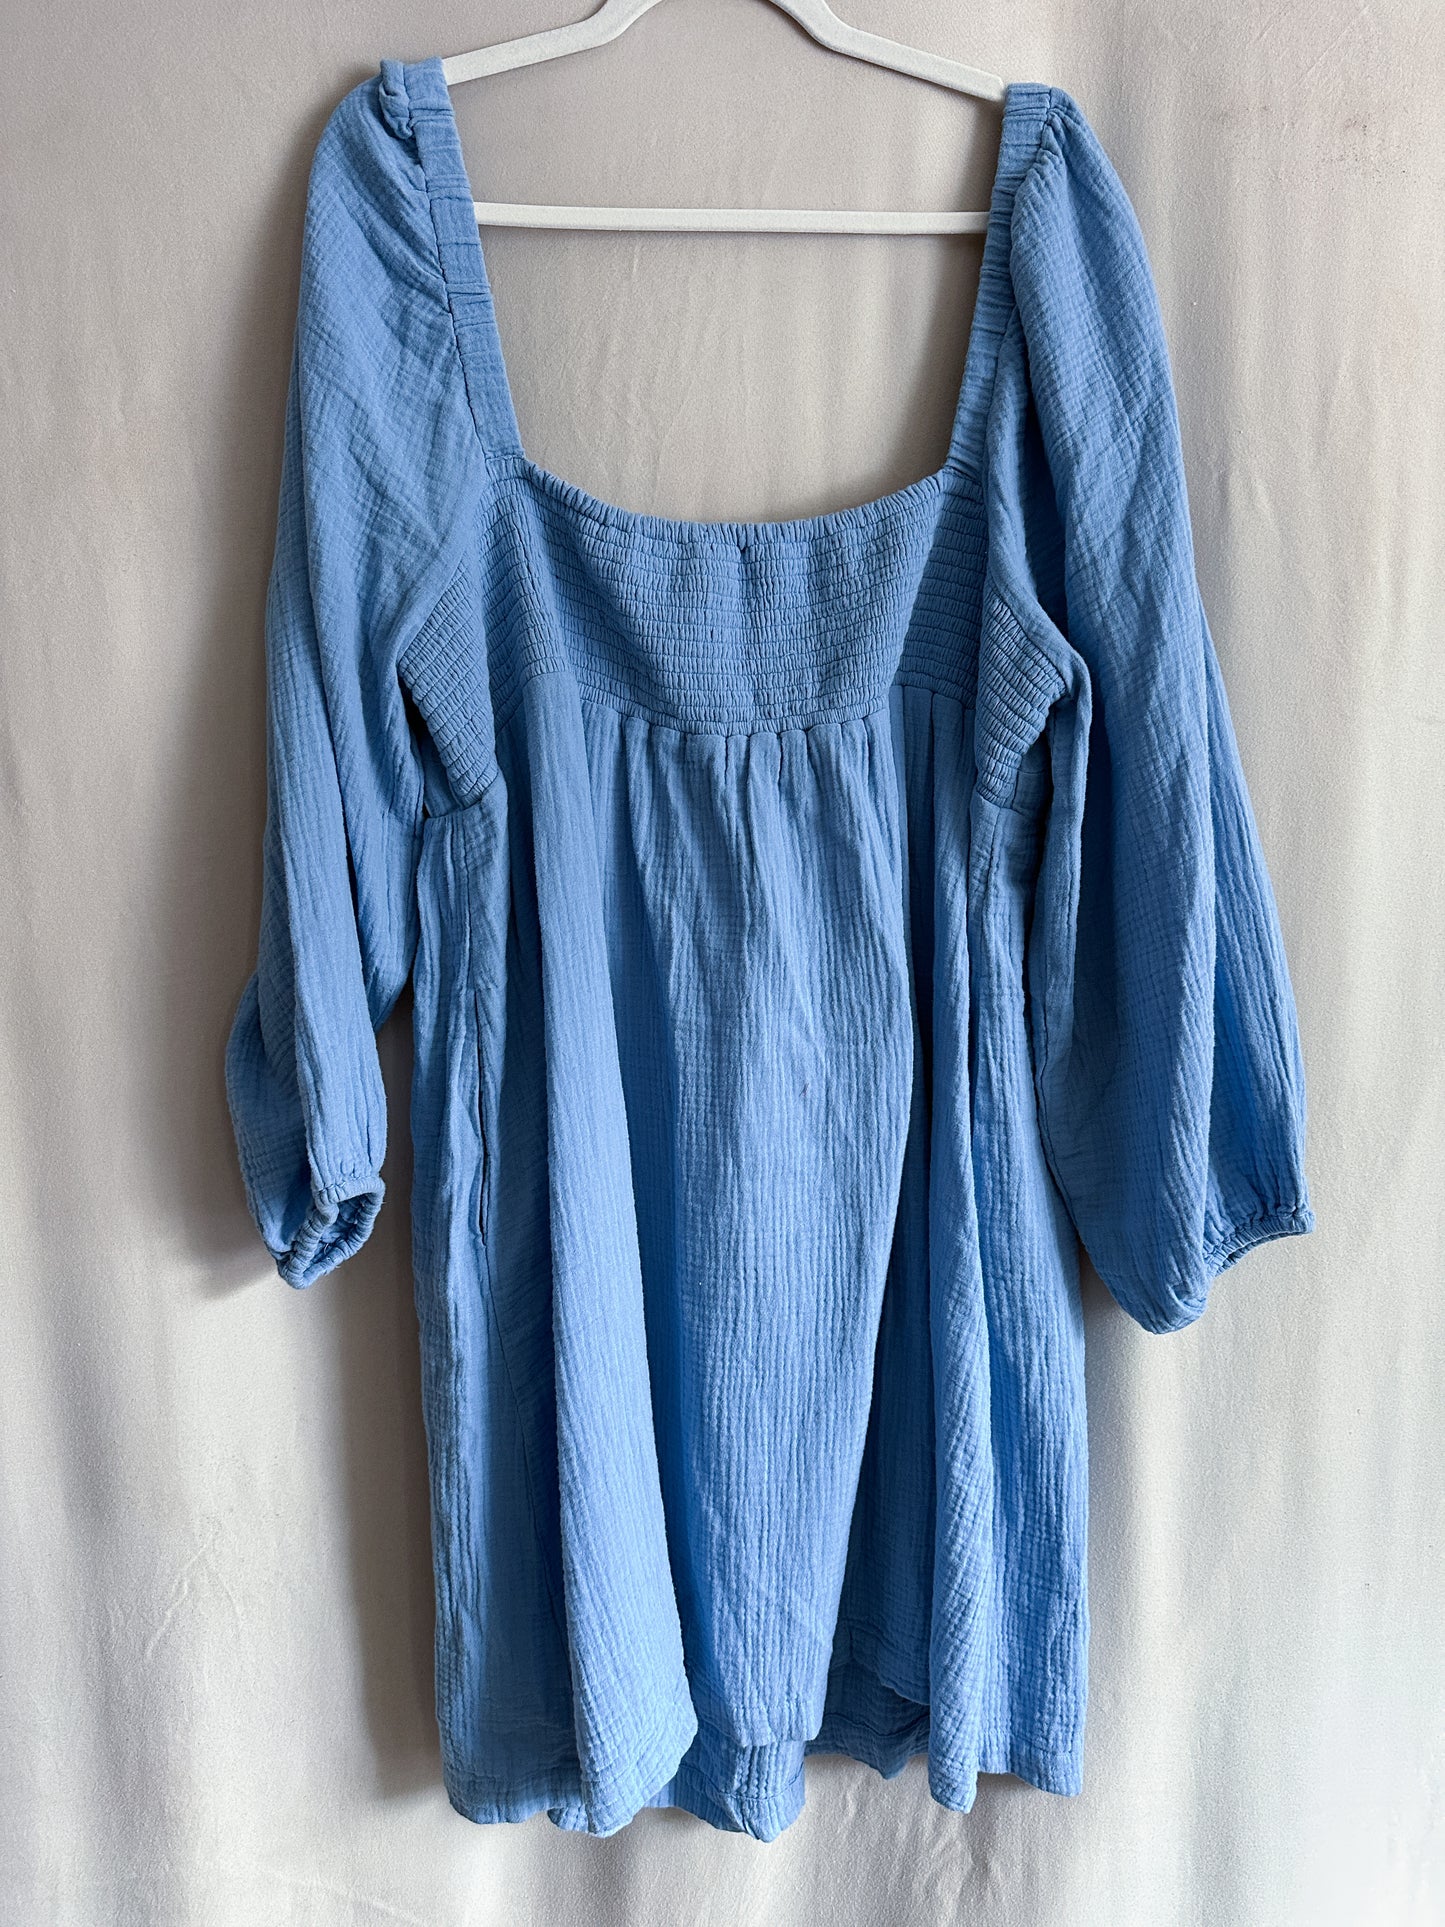 J. Crew Light Blue Gauzy Cotton Dress (size 2X)